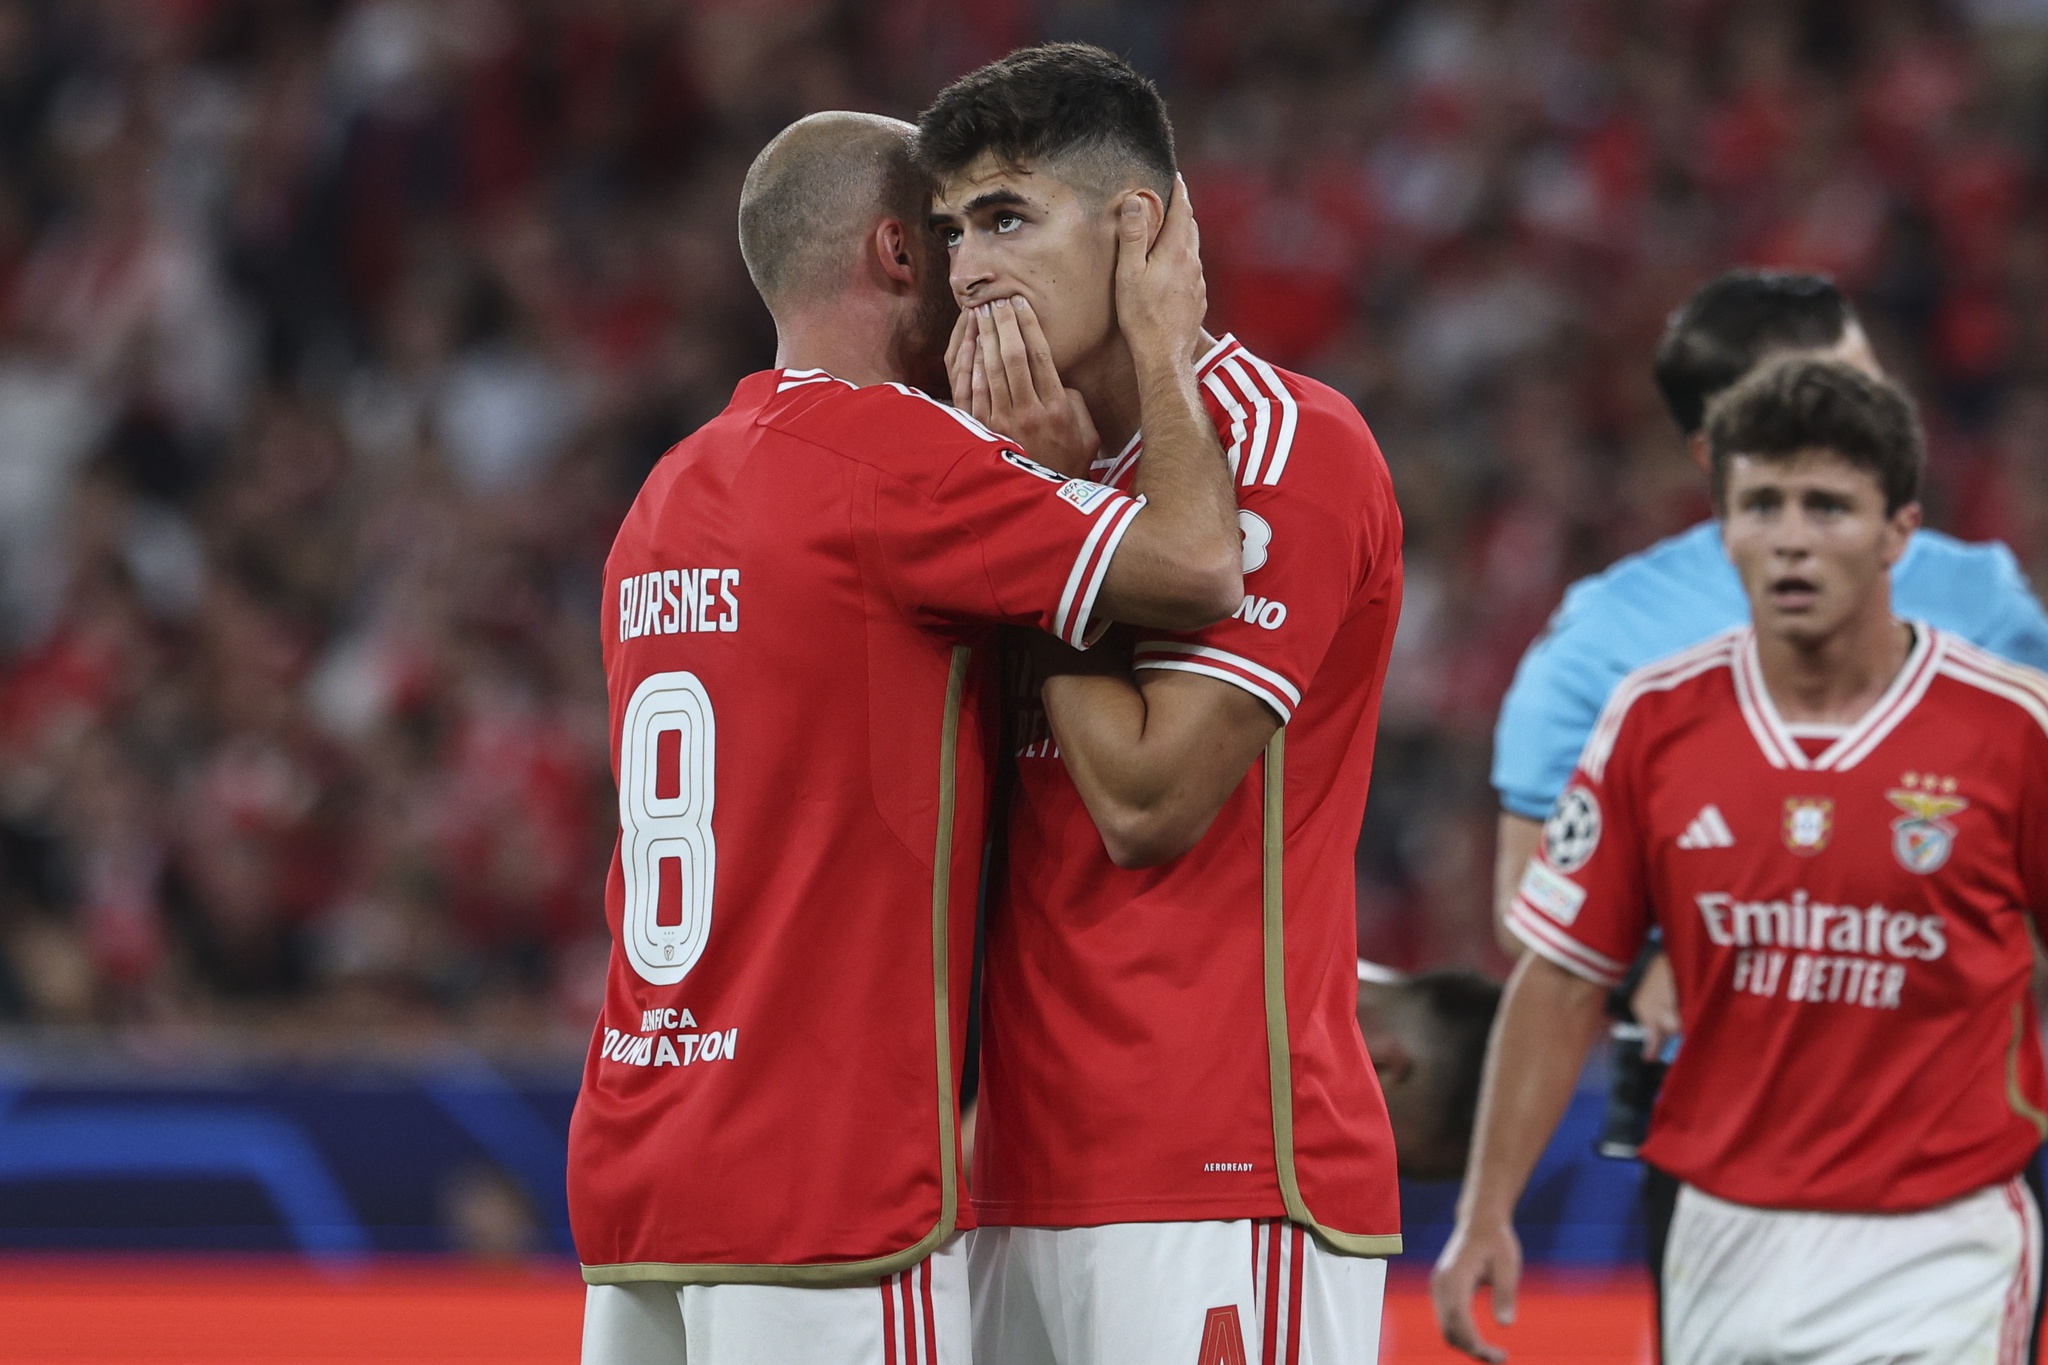 Trubin e a estreia negativa pelo Benfica na Champions